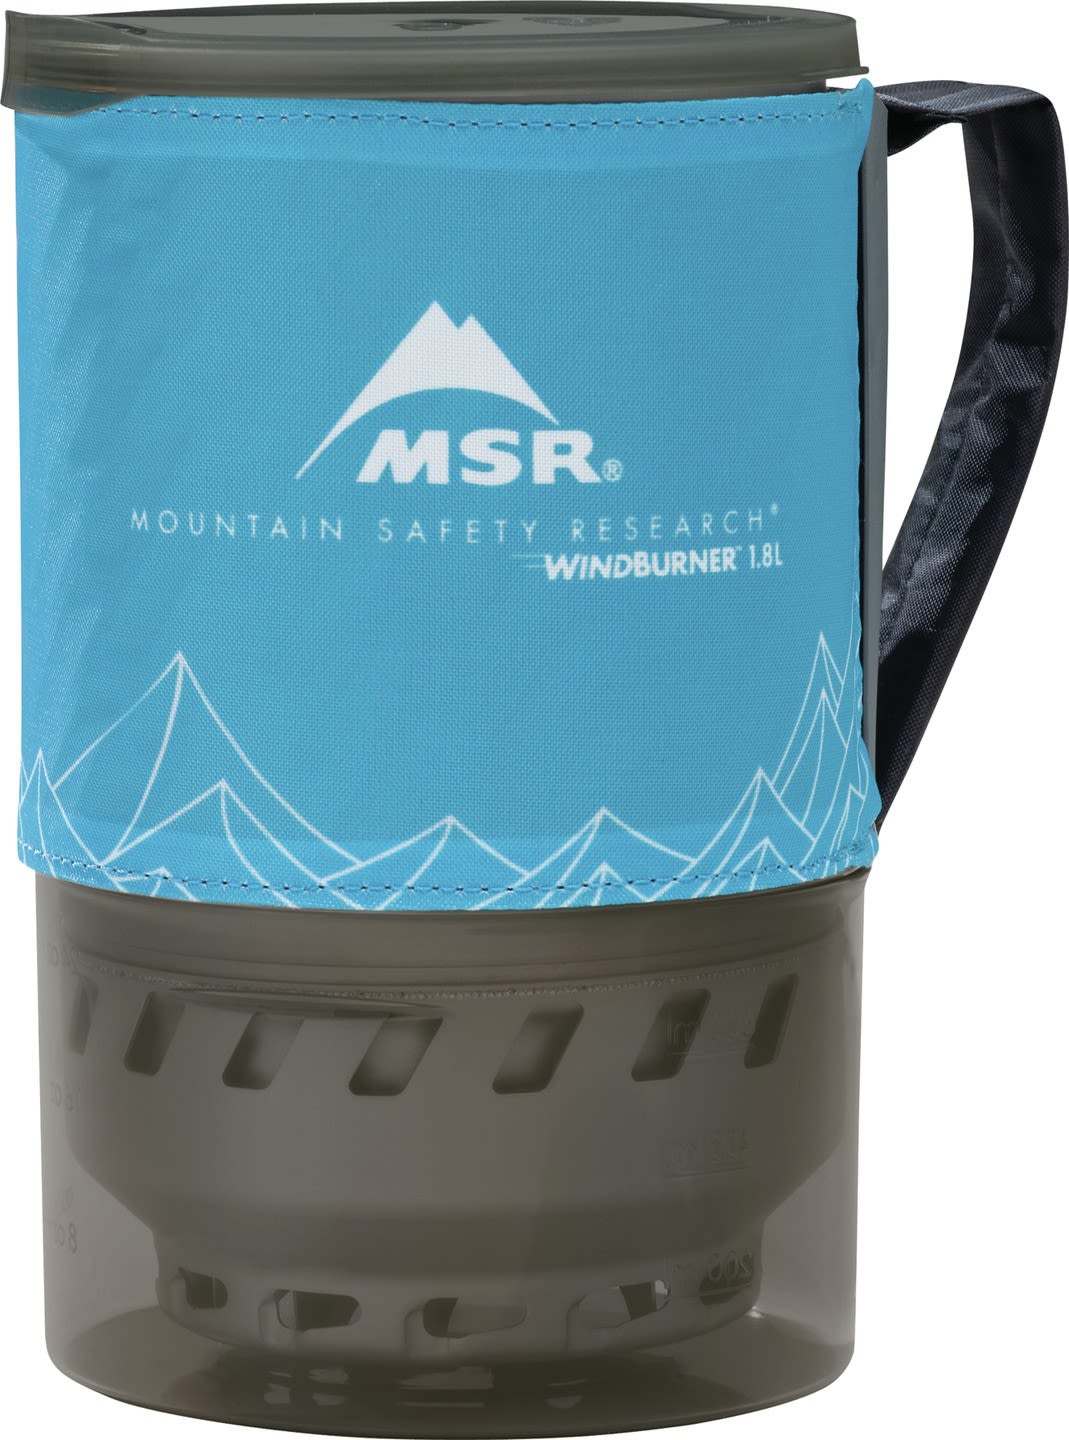 MSR Windburner 1-8L Accessory Pot Blau- Kocher-Zubehr- Grsse 1-8l - Farbe Blue unter MSR